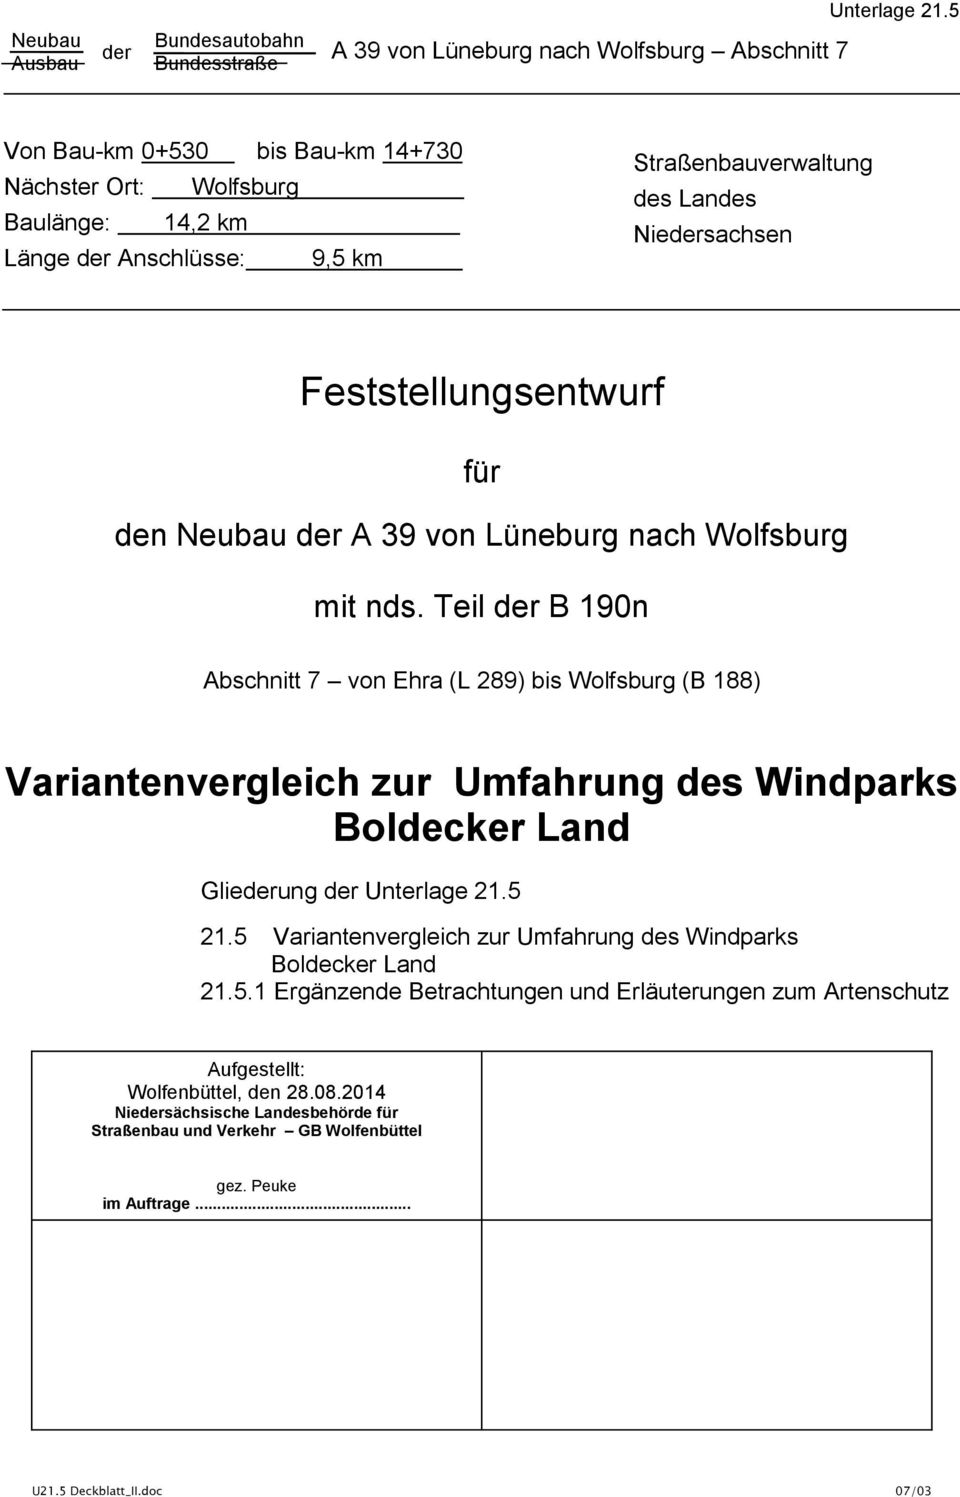 den Neubau der A 39 vn Lüneburg nach Wlfsburg mit nds. Teil der B 190n Abschnitt 7 vn Ehra (L 289) bis Wlfsburg (B 188) Bldecker Land Gliederung der Unterlage 21.5 21.